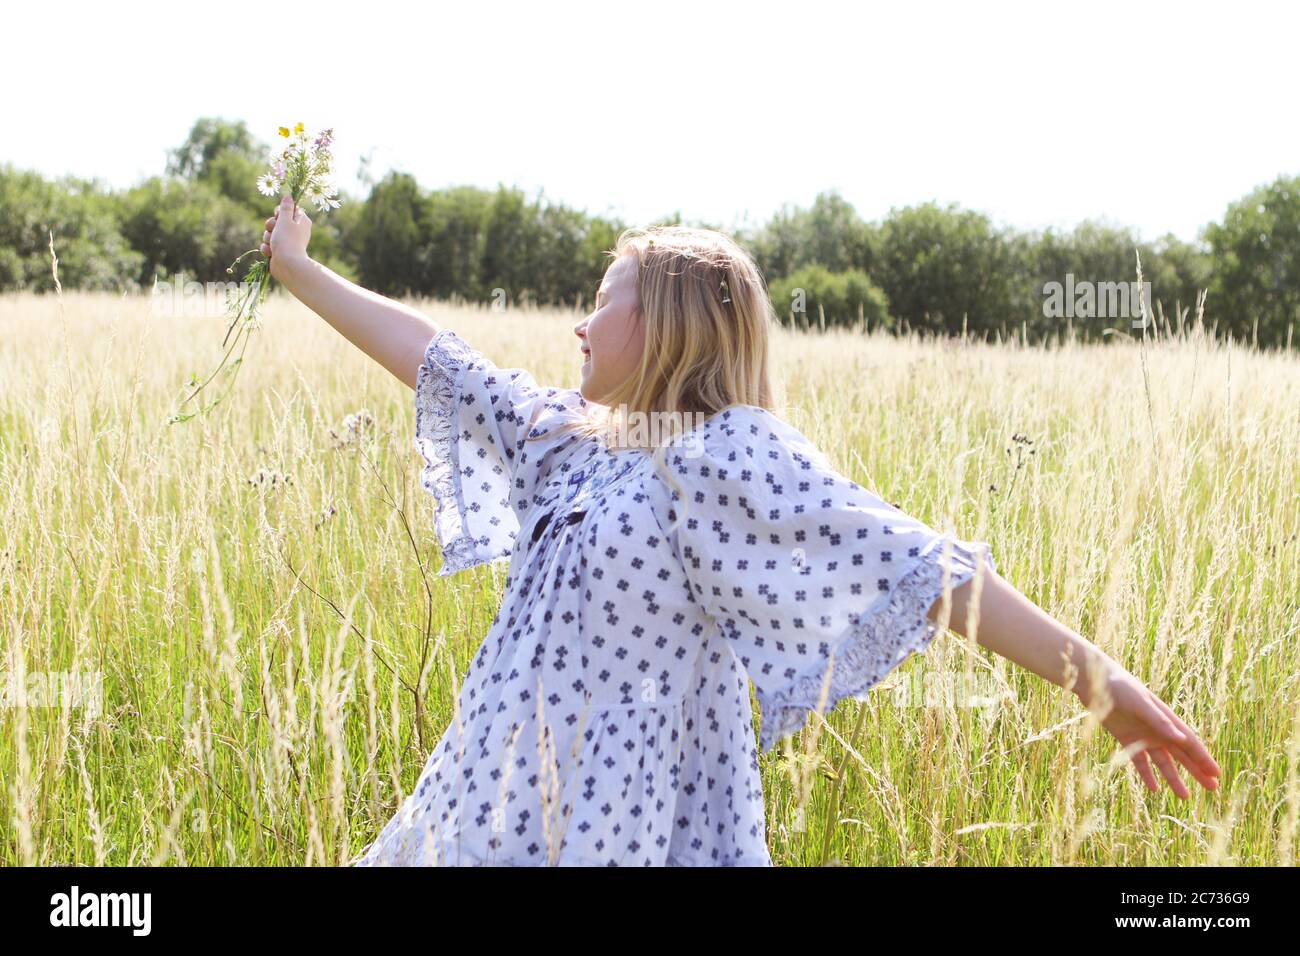 Una giovane ragazza hippy graziosa con catena daisy in capelli biondi tiene un poy di fiori selvatici con le braccia estese n un campo di pascolo in estate Foto Stock